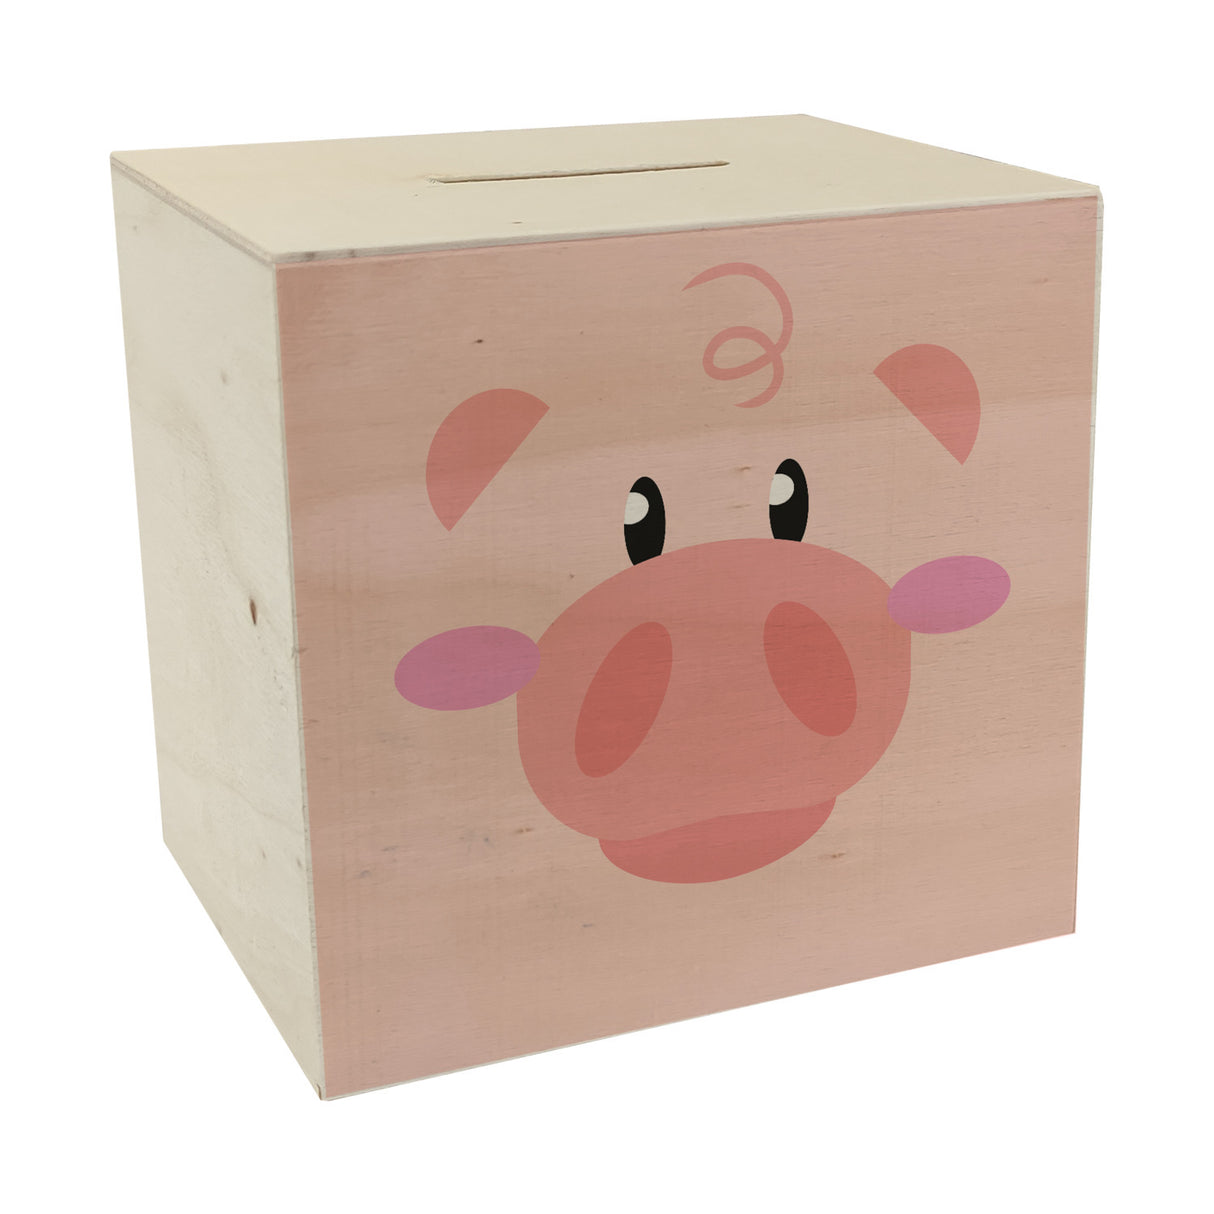 Spardose aus Keramik mit niedlichem Schweine-Gesicht - für kleine Kinder